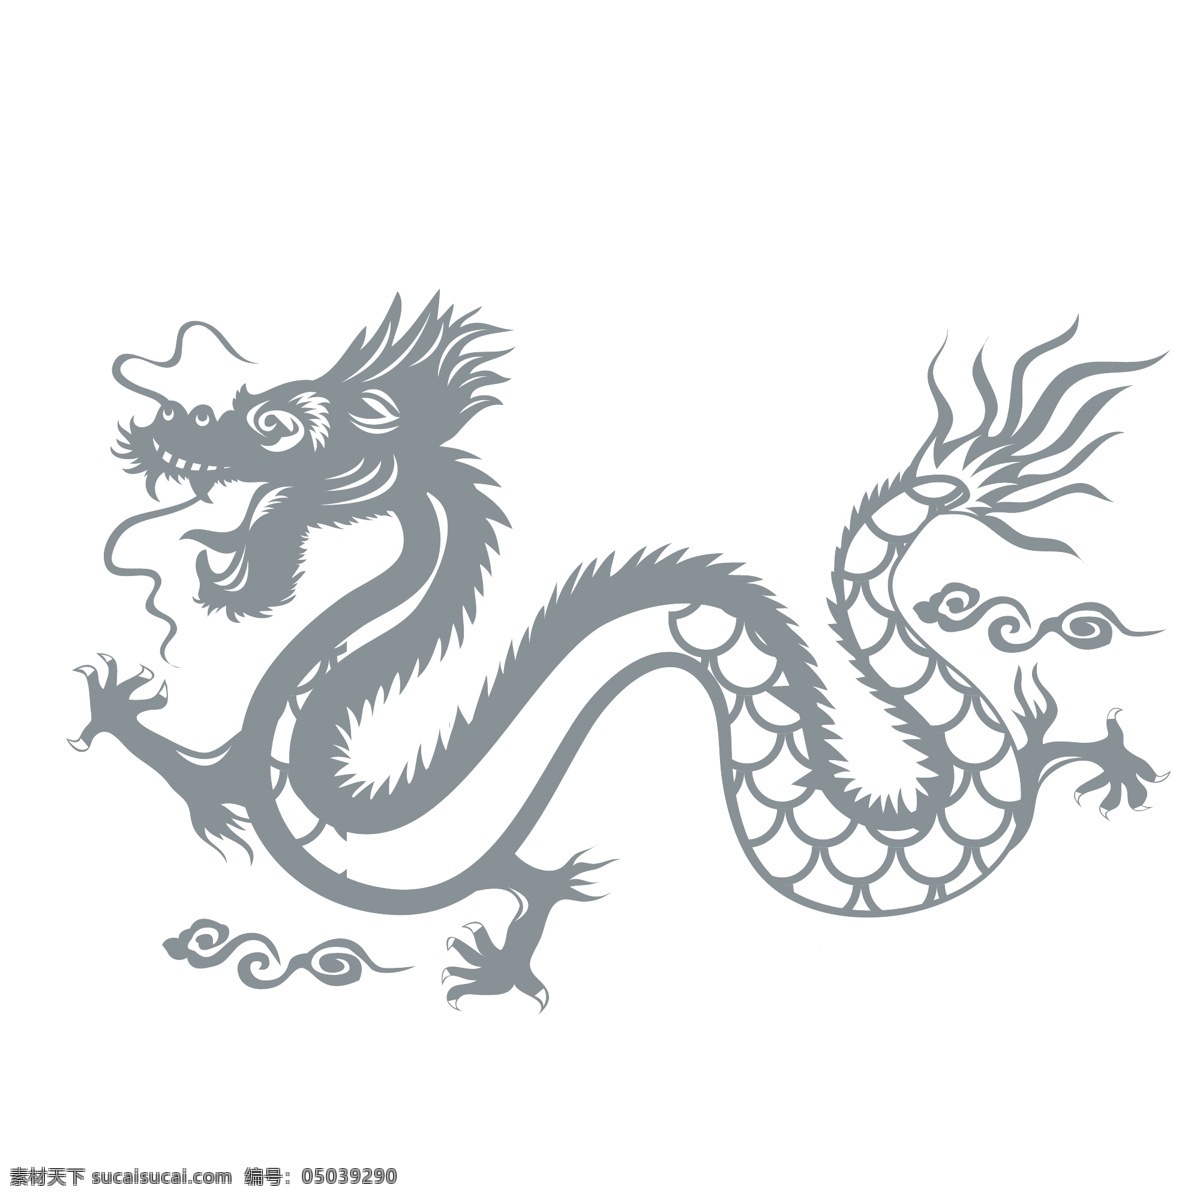 龙 形象设计 图案 中国风龙图案 龙画像 龙绘画 龙图案 龙纹 纹身图案 龙主题图案 矢量图案 雕刻图案 文化艺术